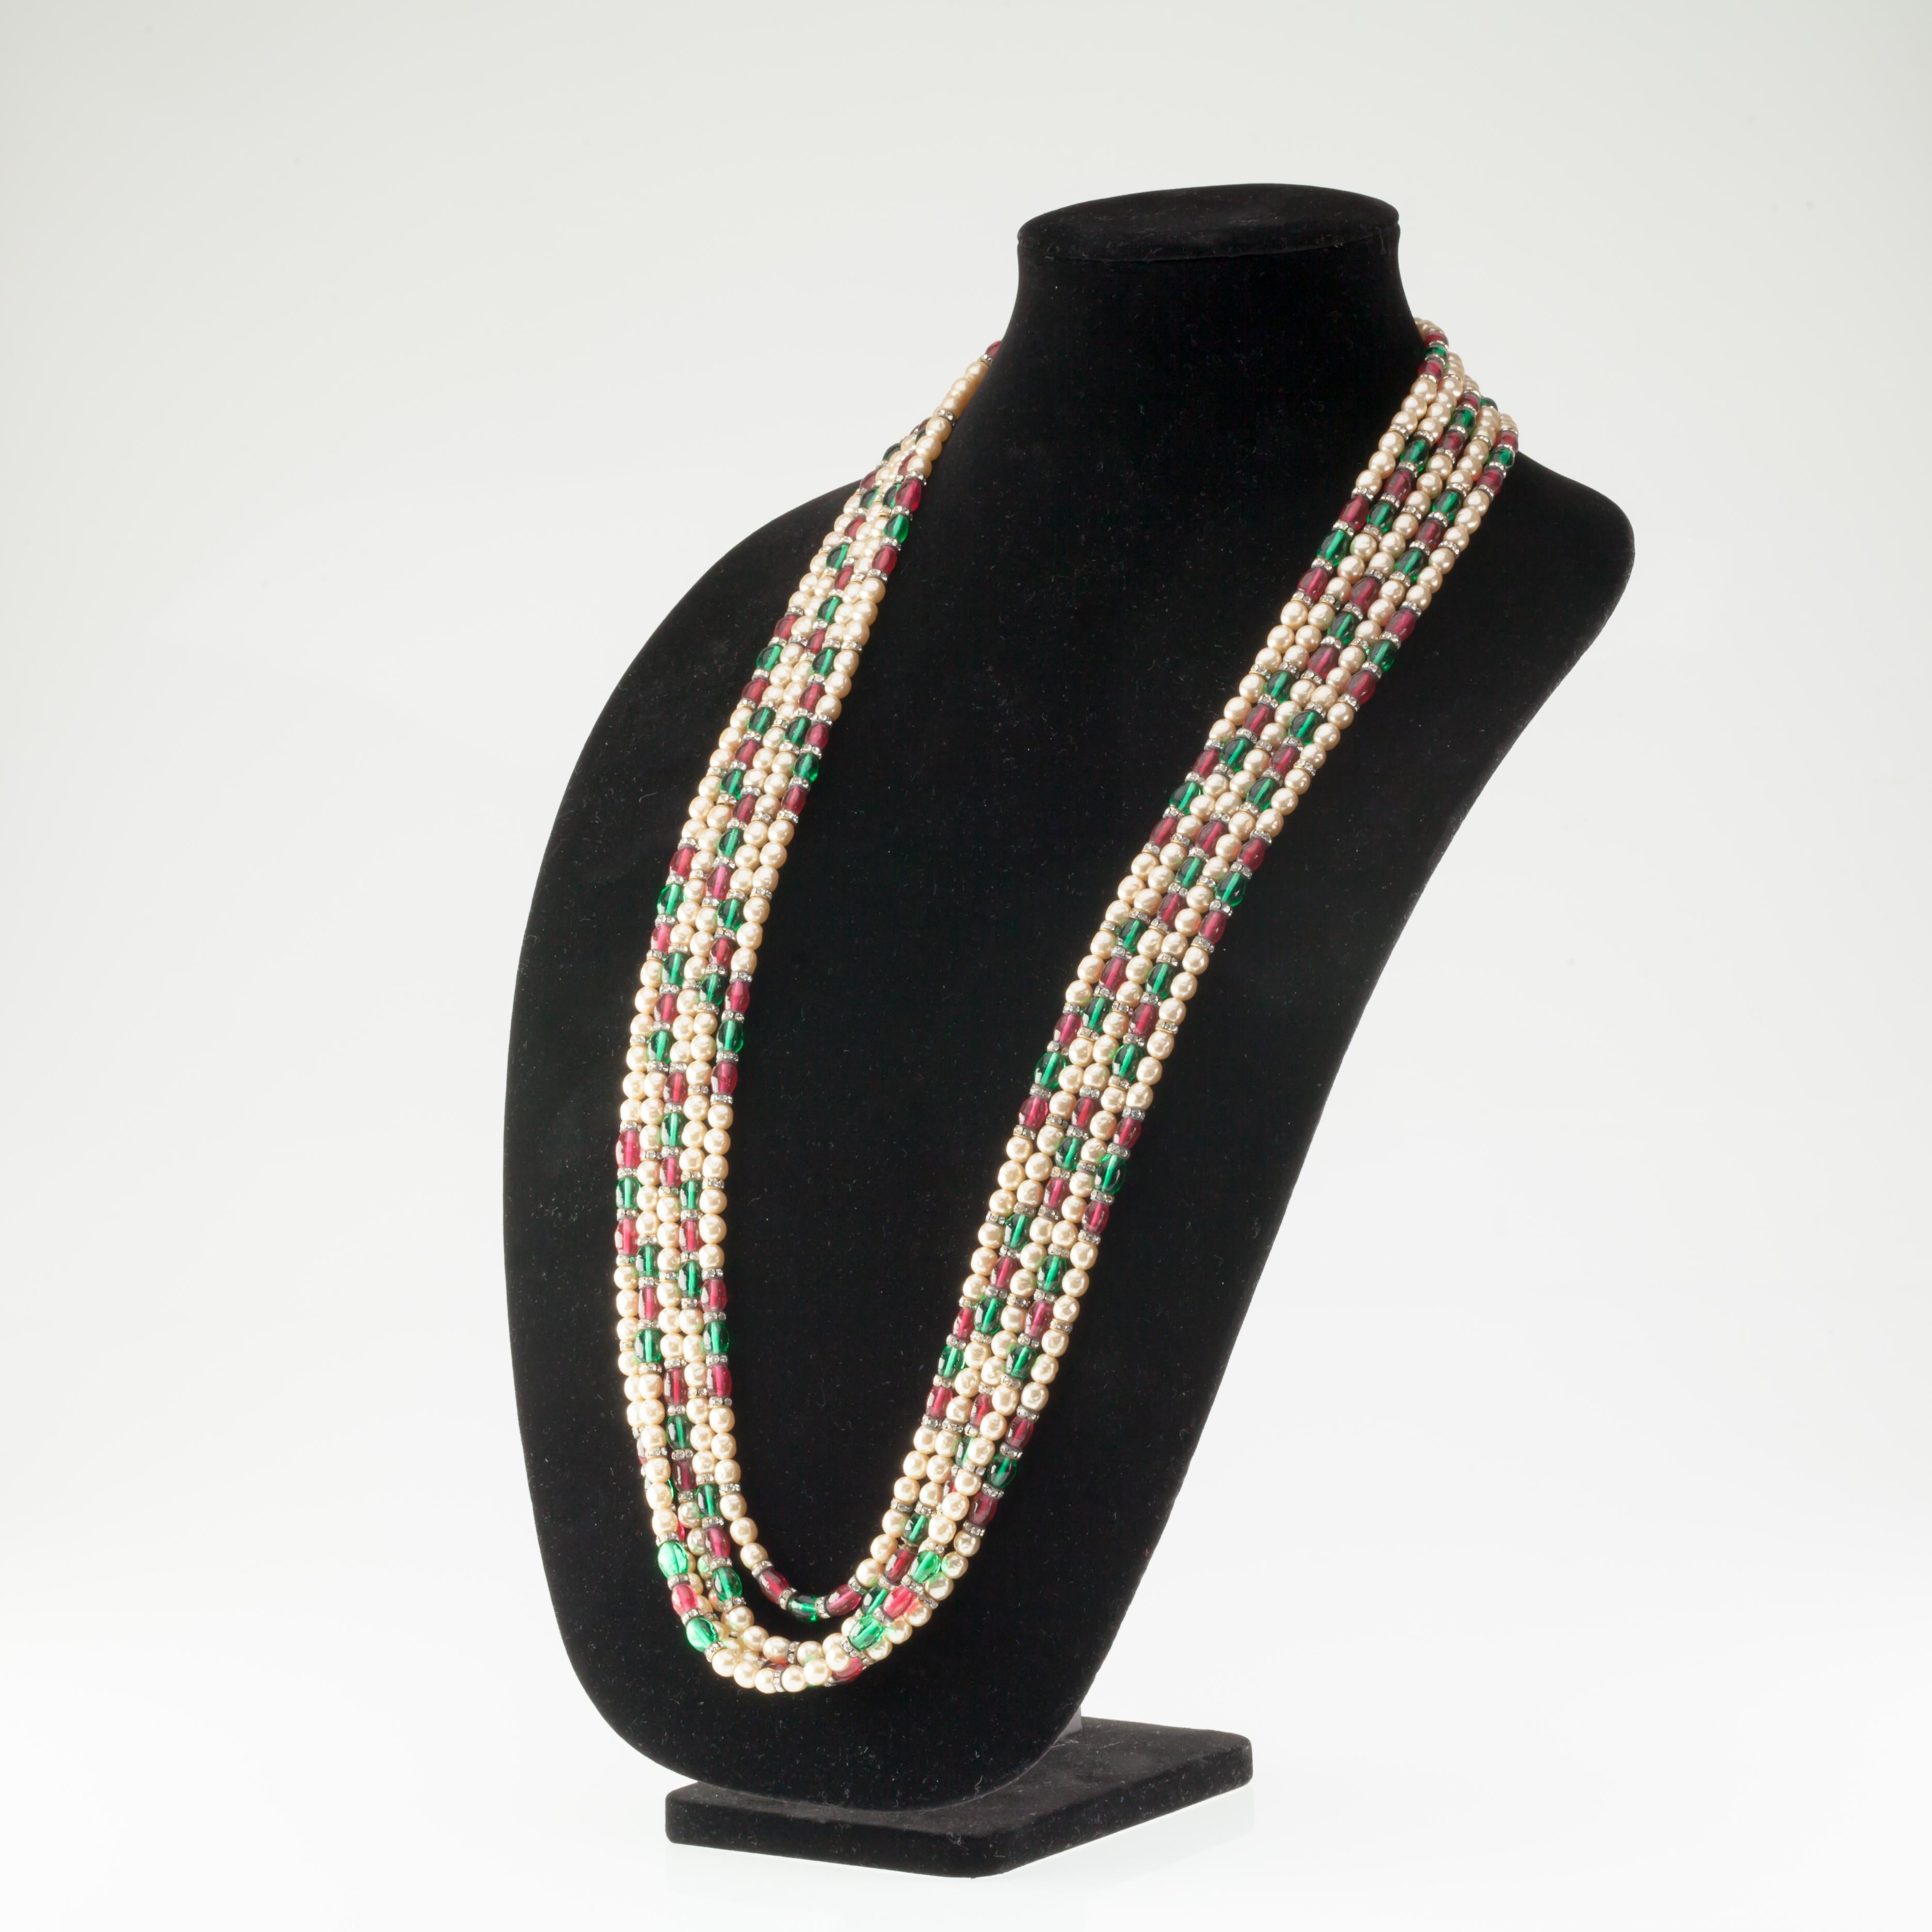 Wunderschöne Chanel 5-Strang-Kostüm-Halskette
Mit 5 zunehmenden Strängen aus abwechselnden Kunstperlen und grünen und roten Gripoix-Perlen mit kristallbesetzten Elementen
Jahr der Herstellung: 1970er Jahre (Vintage Style Chanel Tag)
Länge des